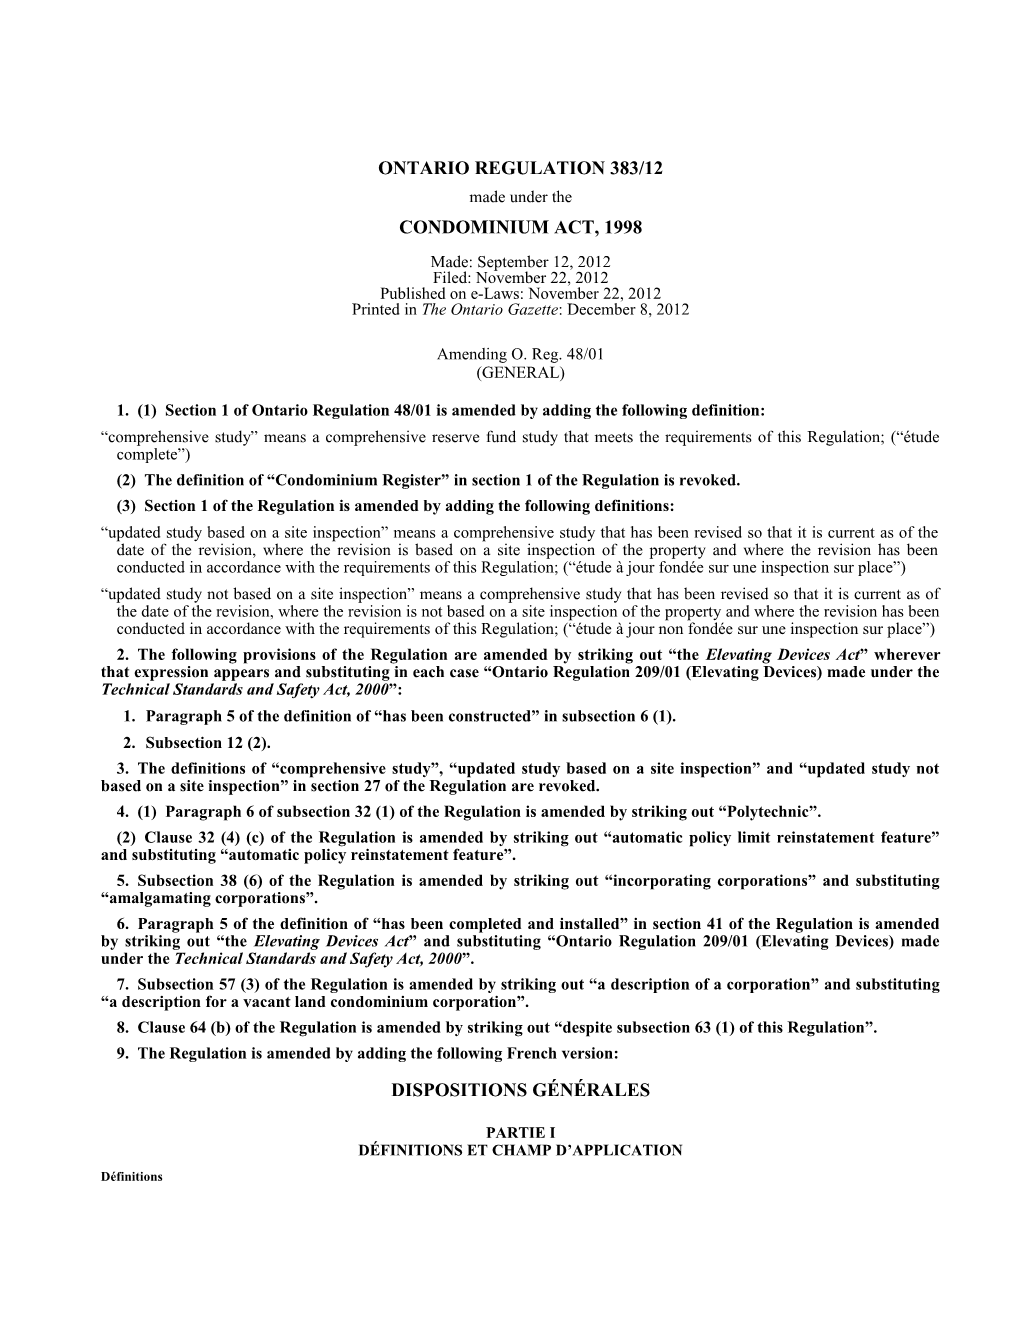 CONDOMINIUM ACT, 1998 - O. Reg. 383/12